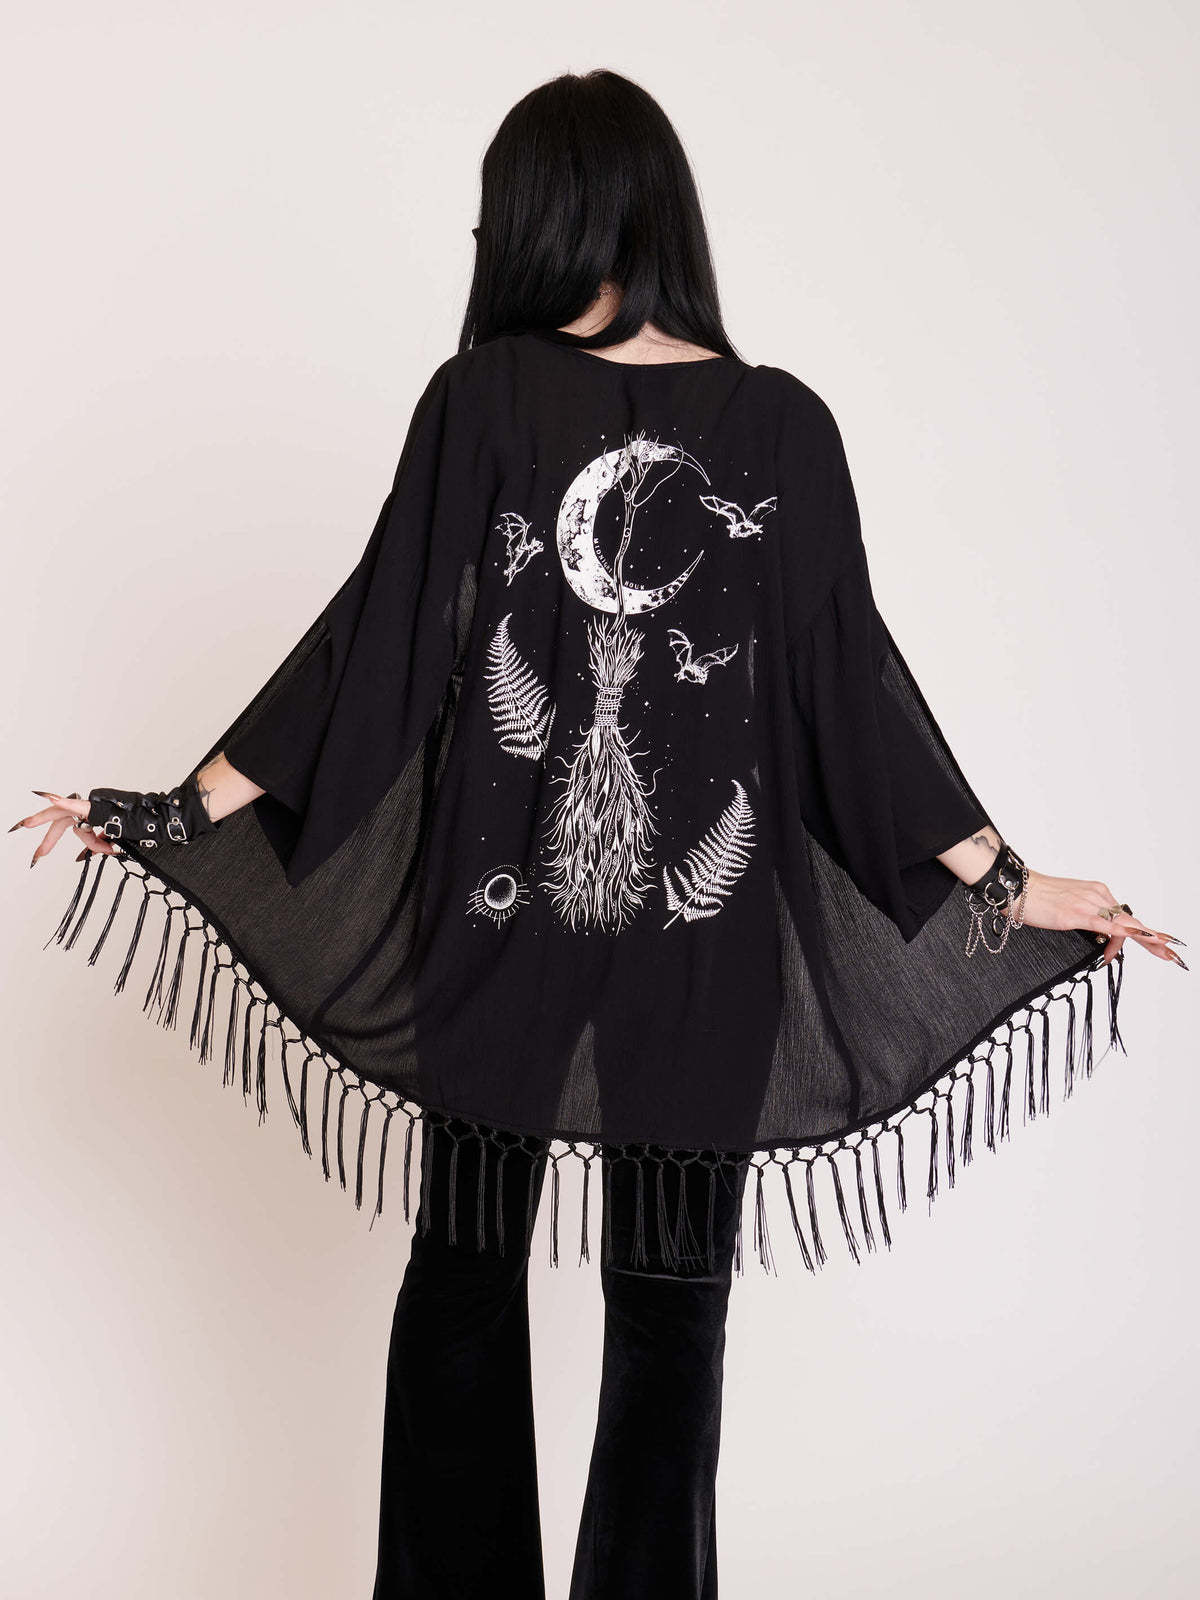 Witchy graphic on black kimono